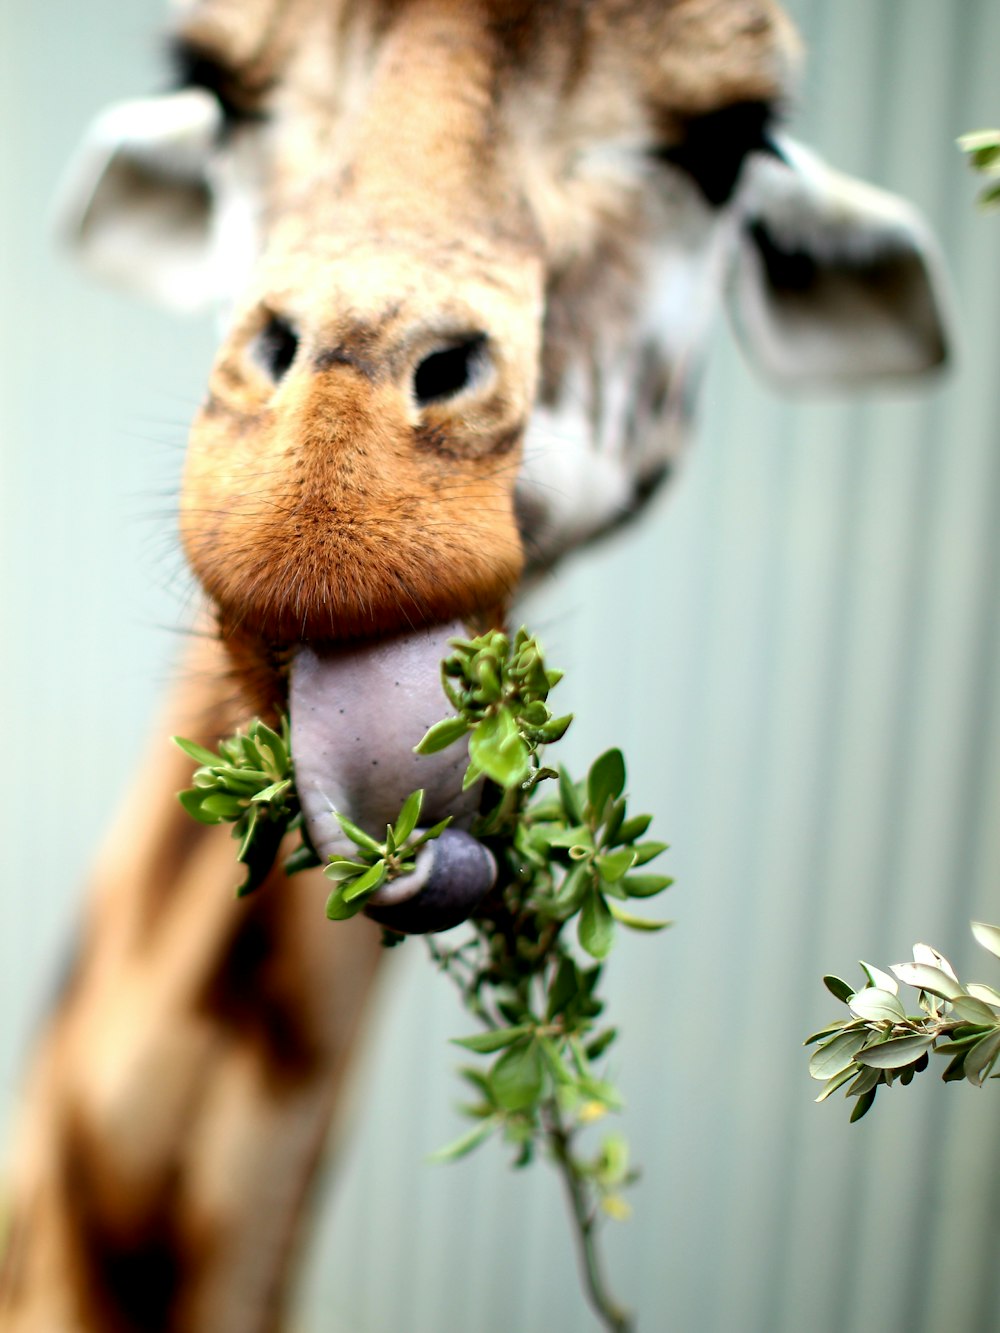 giraffe eating plant